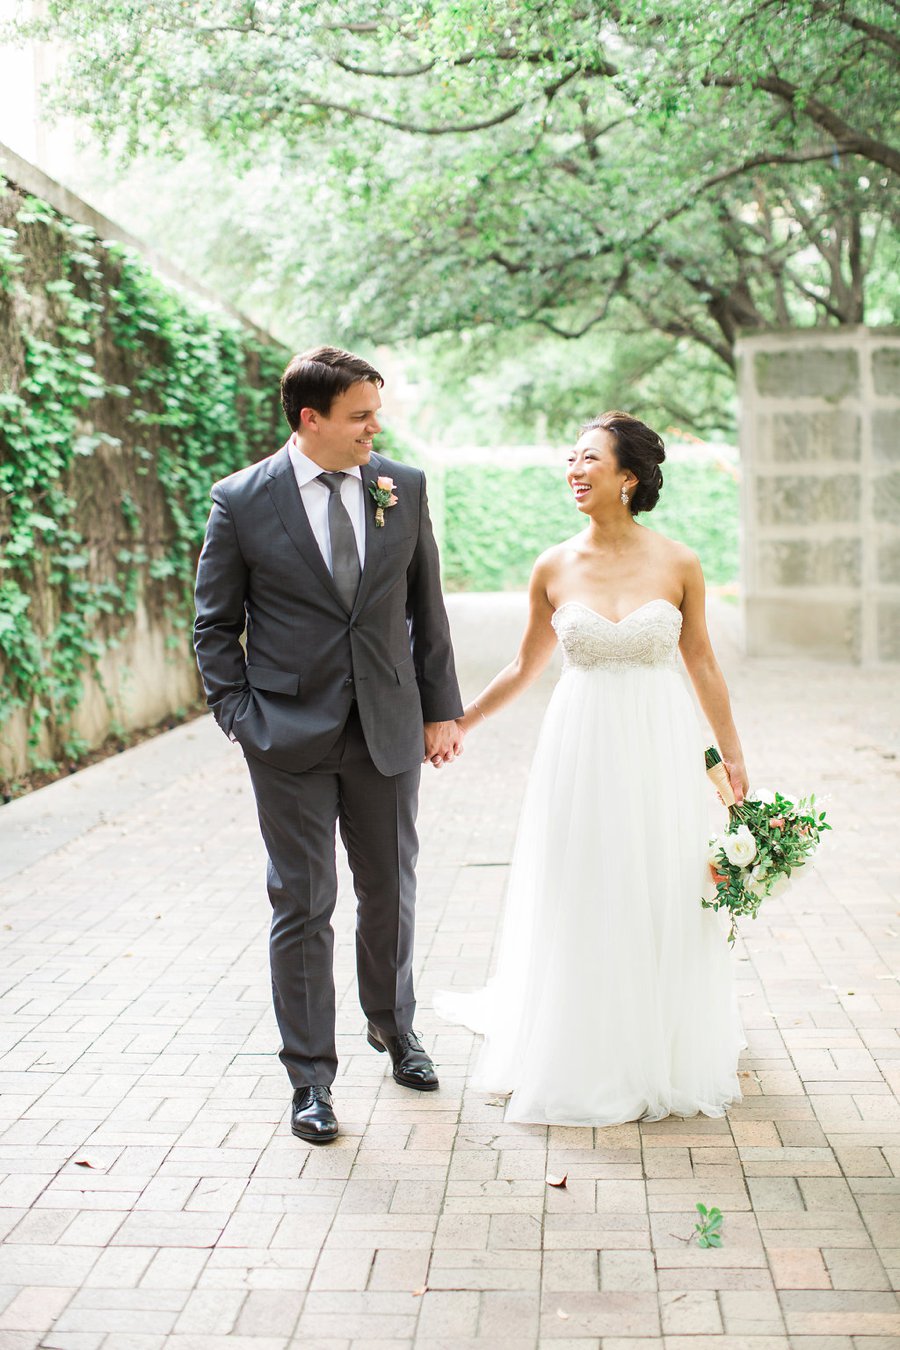 Green & White Modern Garden Dallas Wedding via TheELD.com